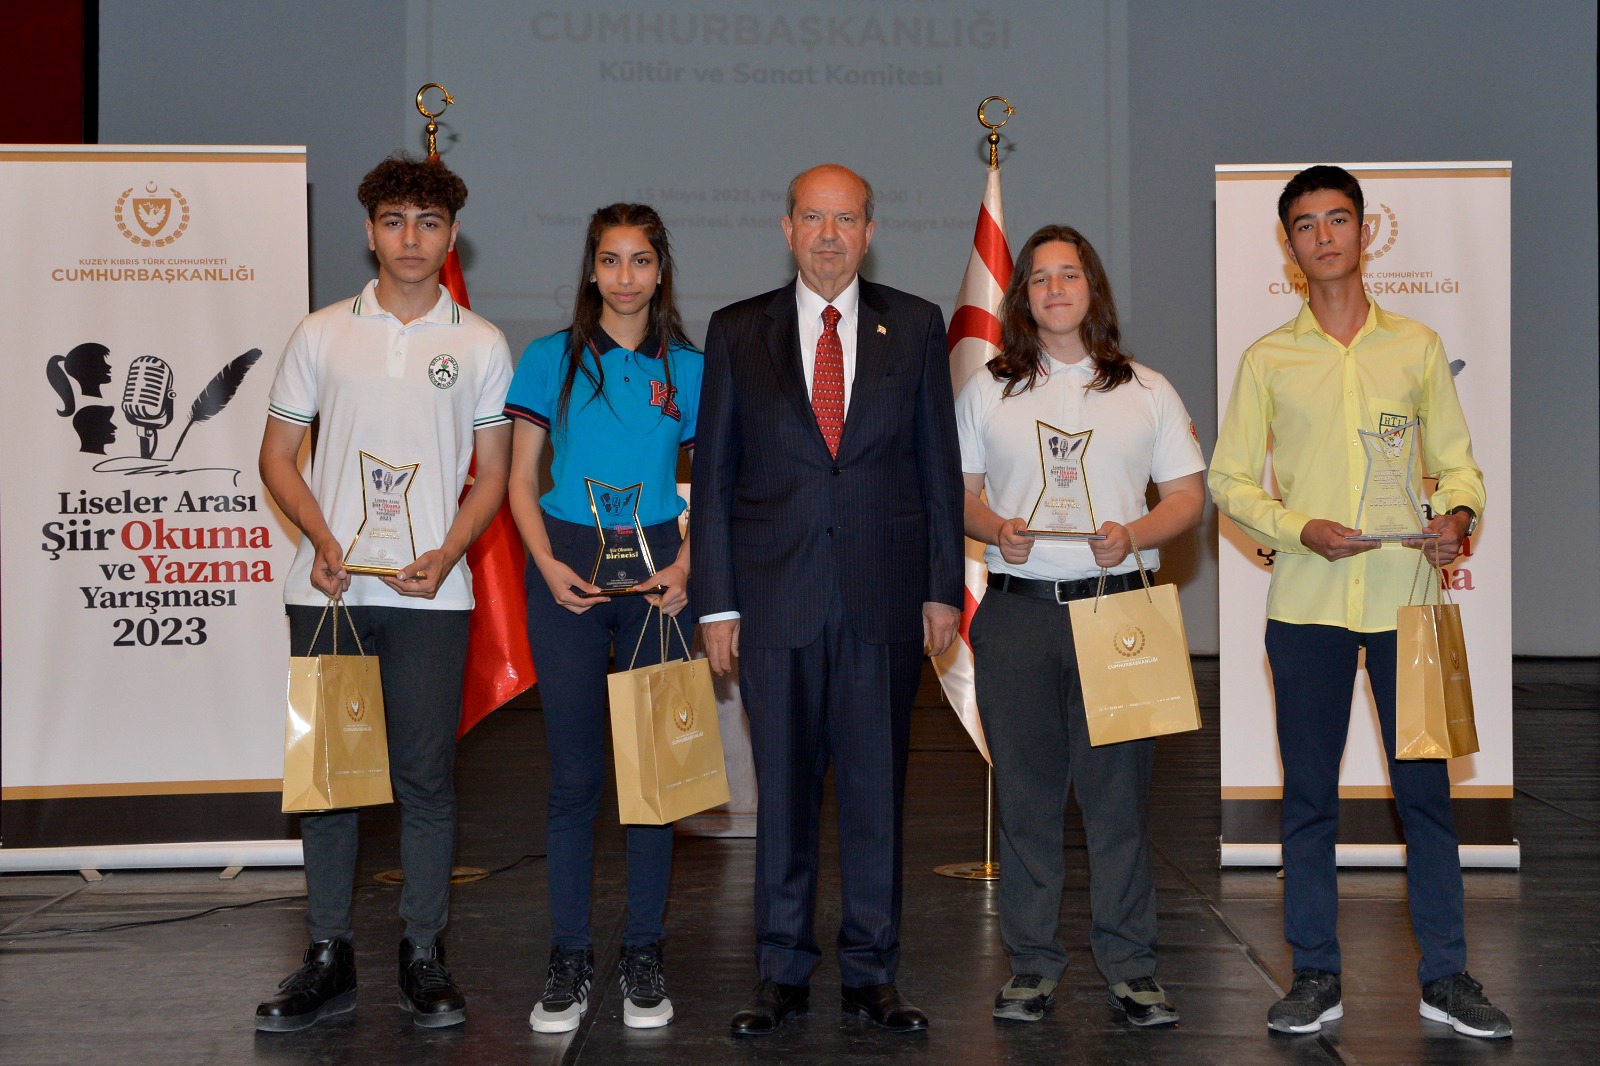 Cumhurbaşkanı Ersin Tatar ile eşi Sibel Tatar, “Liseler Arası Şiir Okuma ve Yazma Yarışması” etkinliğine katıldı